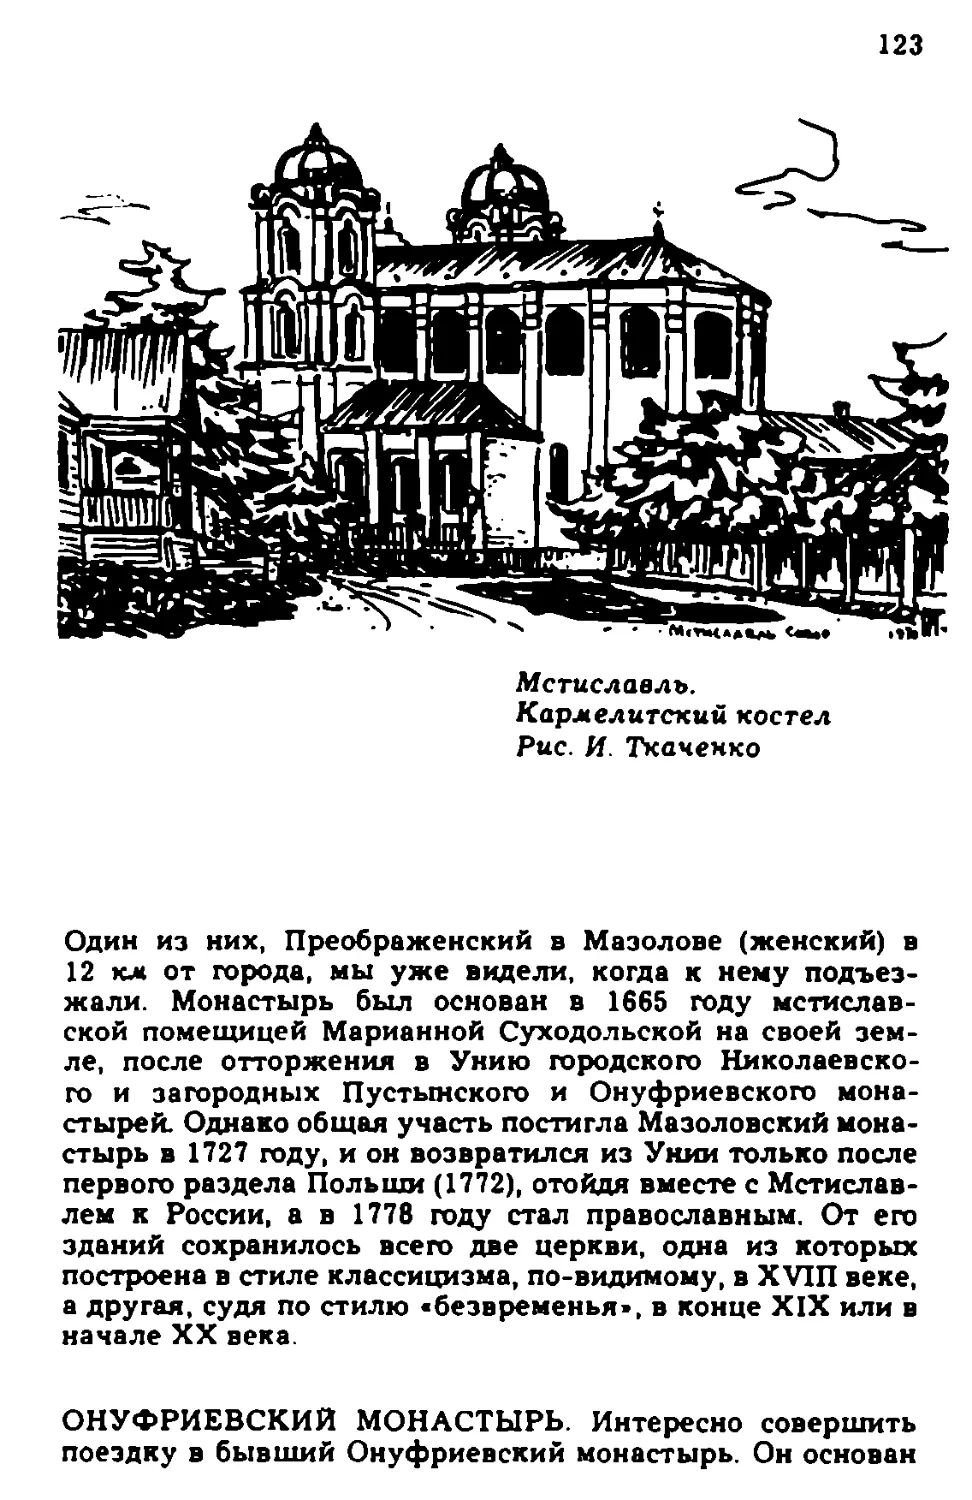 Онуфриевский монастырь